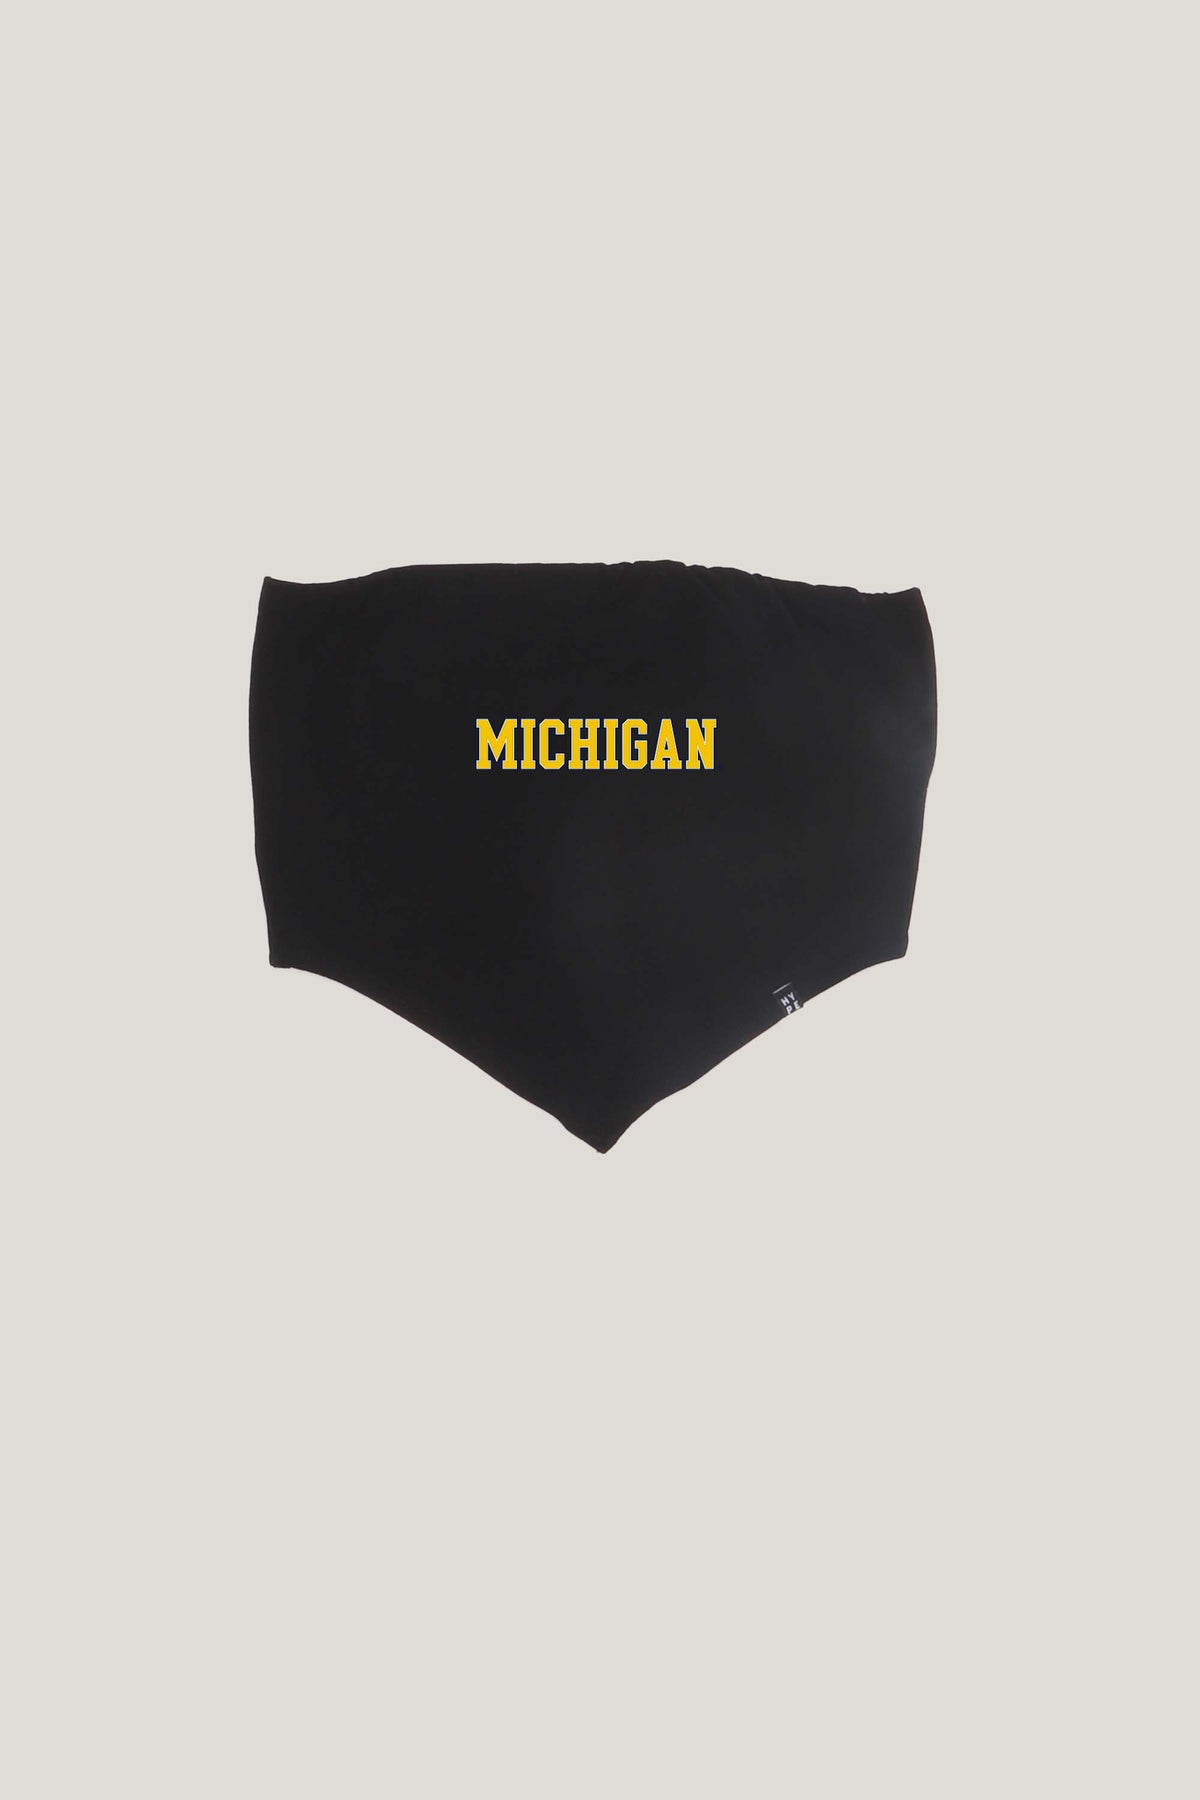 University of Michigan Bandana Top